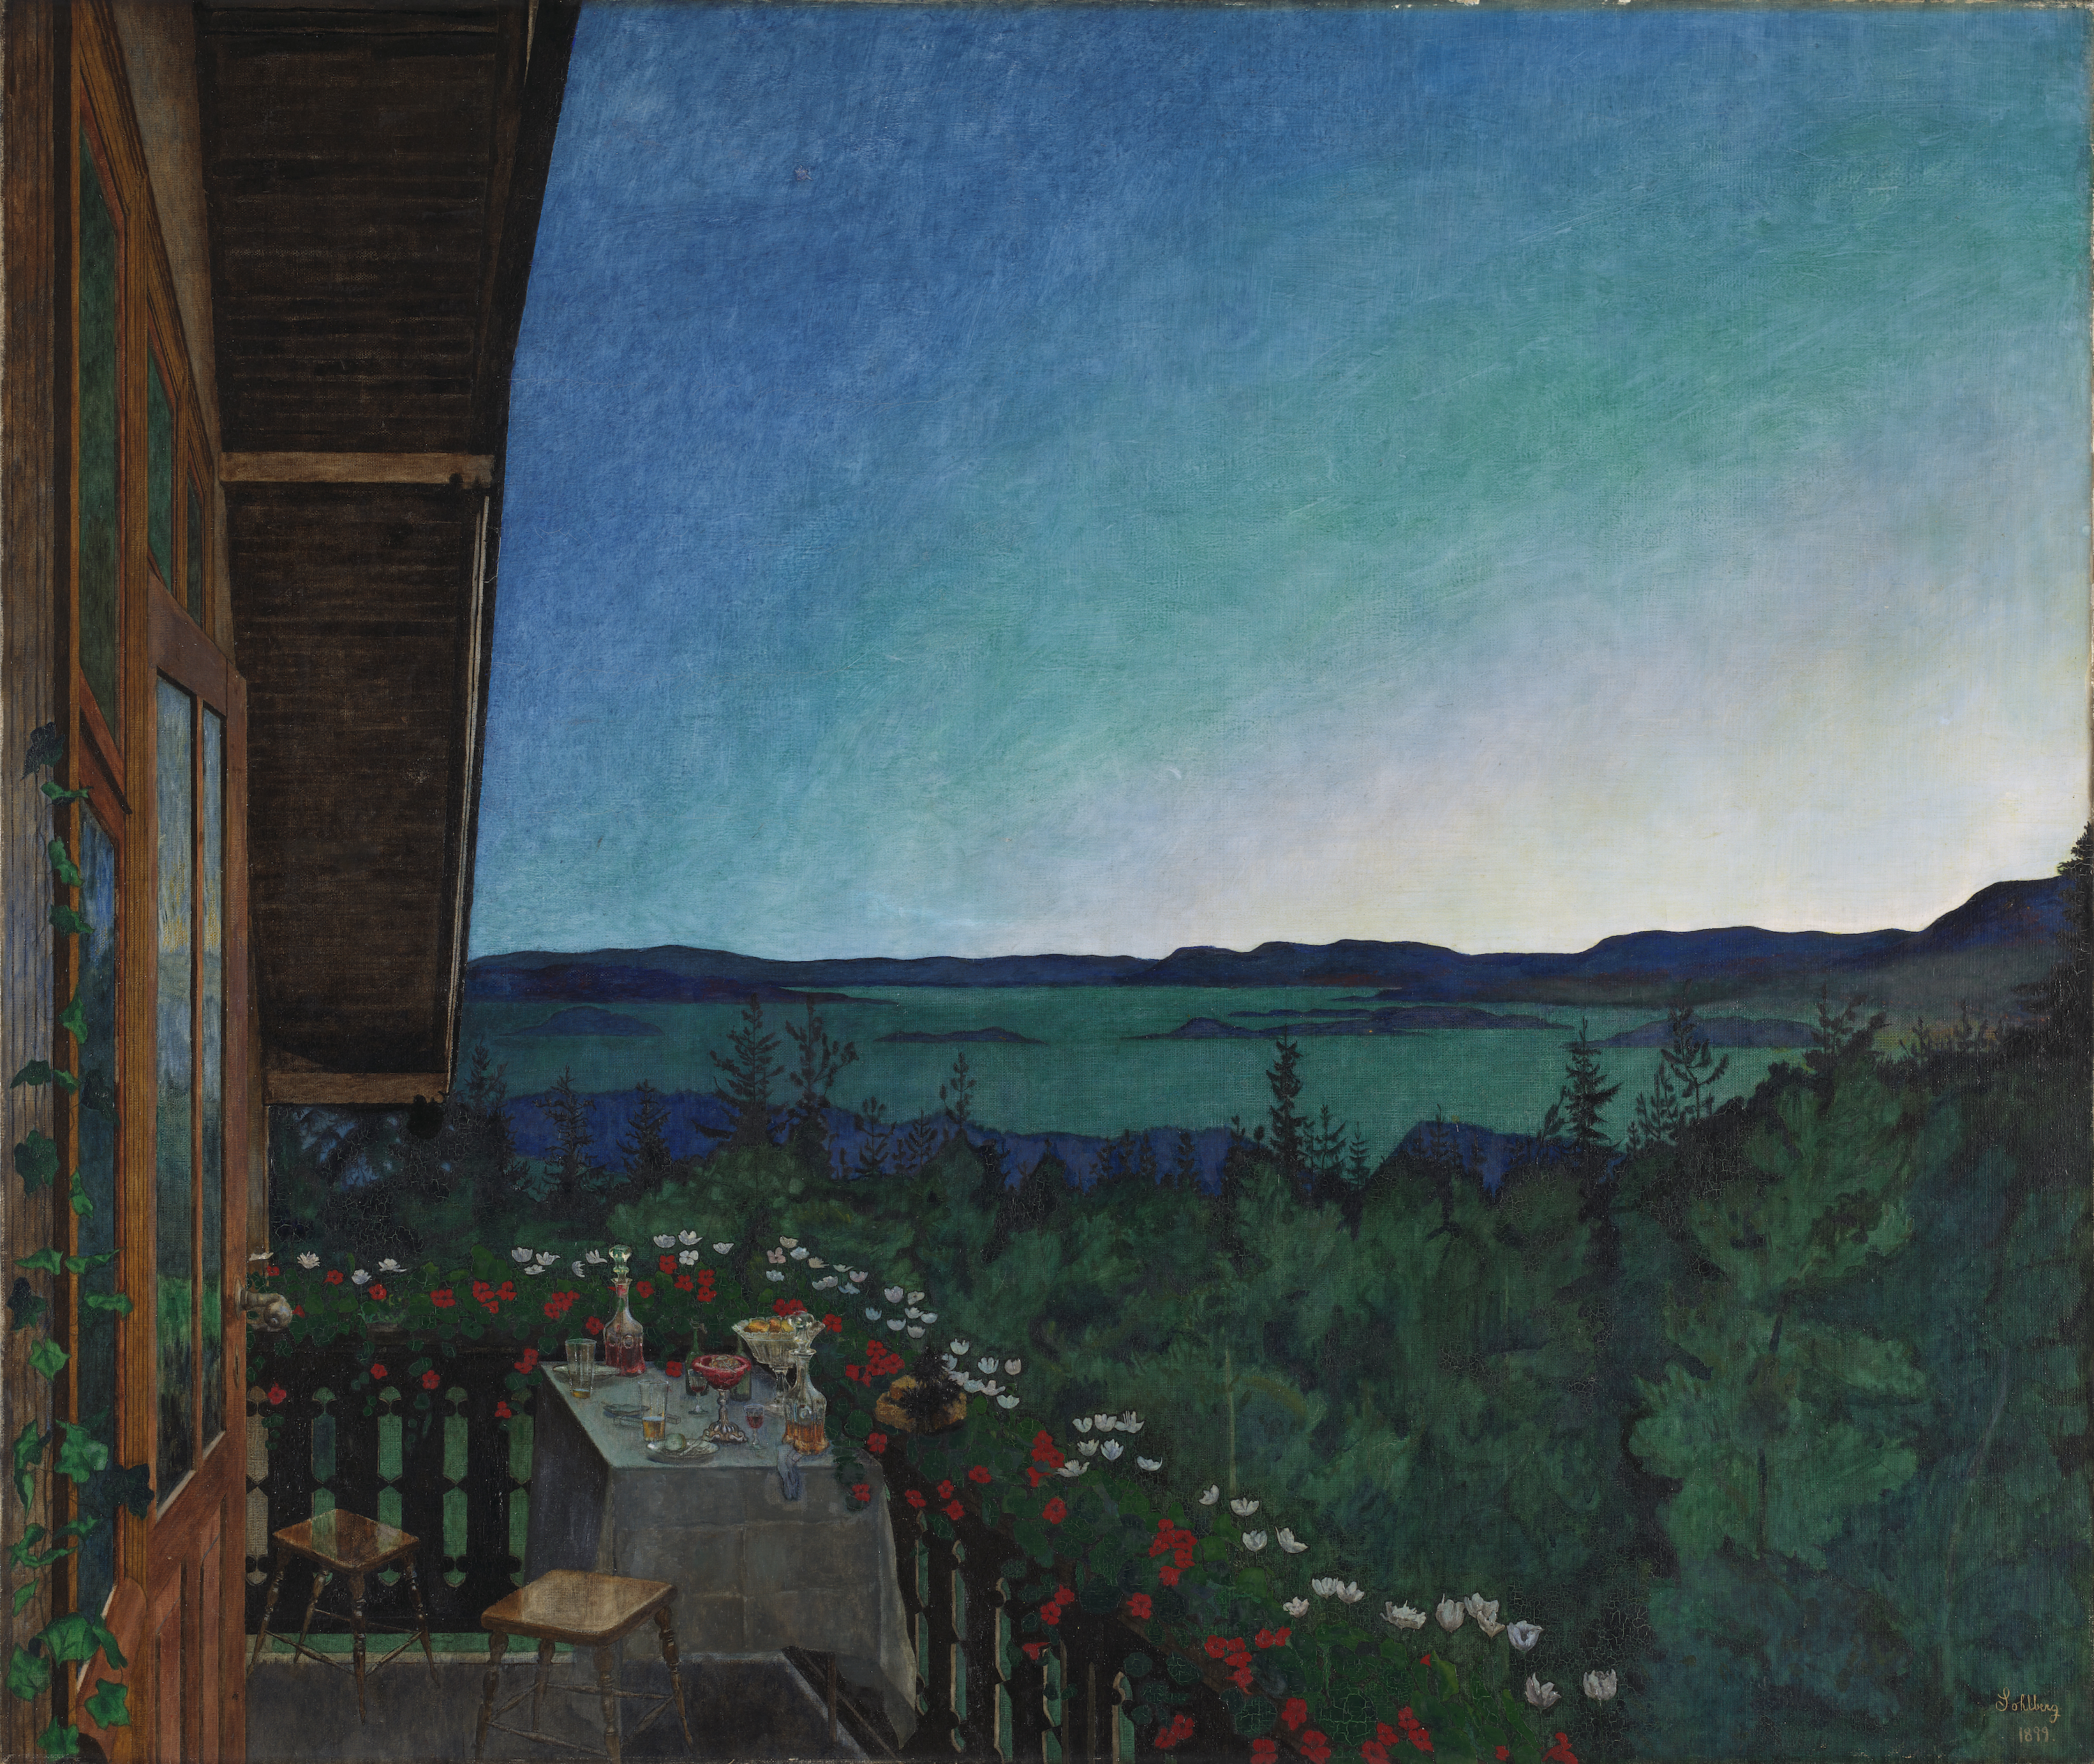 Noche de verano by Harald Sohlberg - 1899 - 114.5 x 135.5 cm Dulwich Picture Gallery